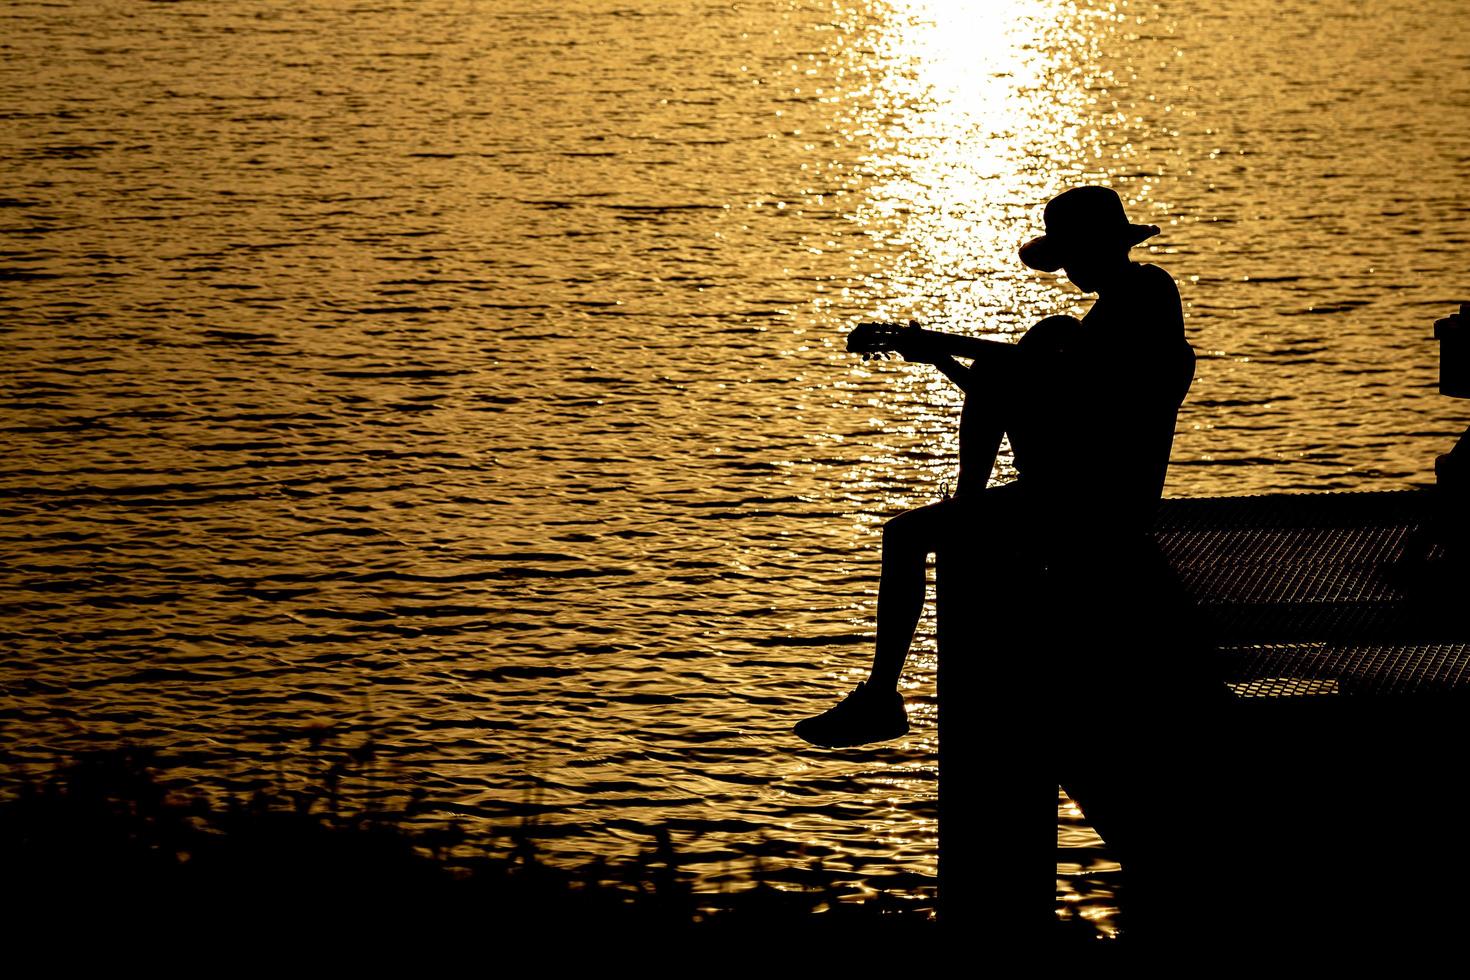 sagoma del chitarrista che suona una chitarra sul fiume sotto il tramonto foto